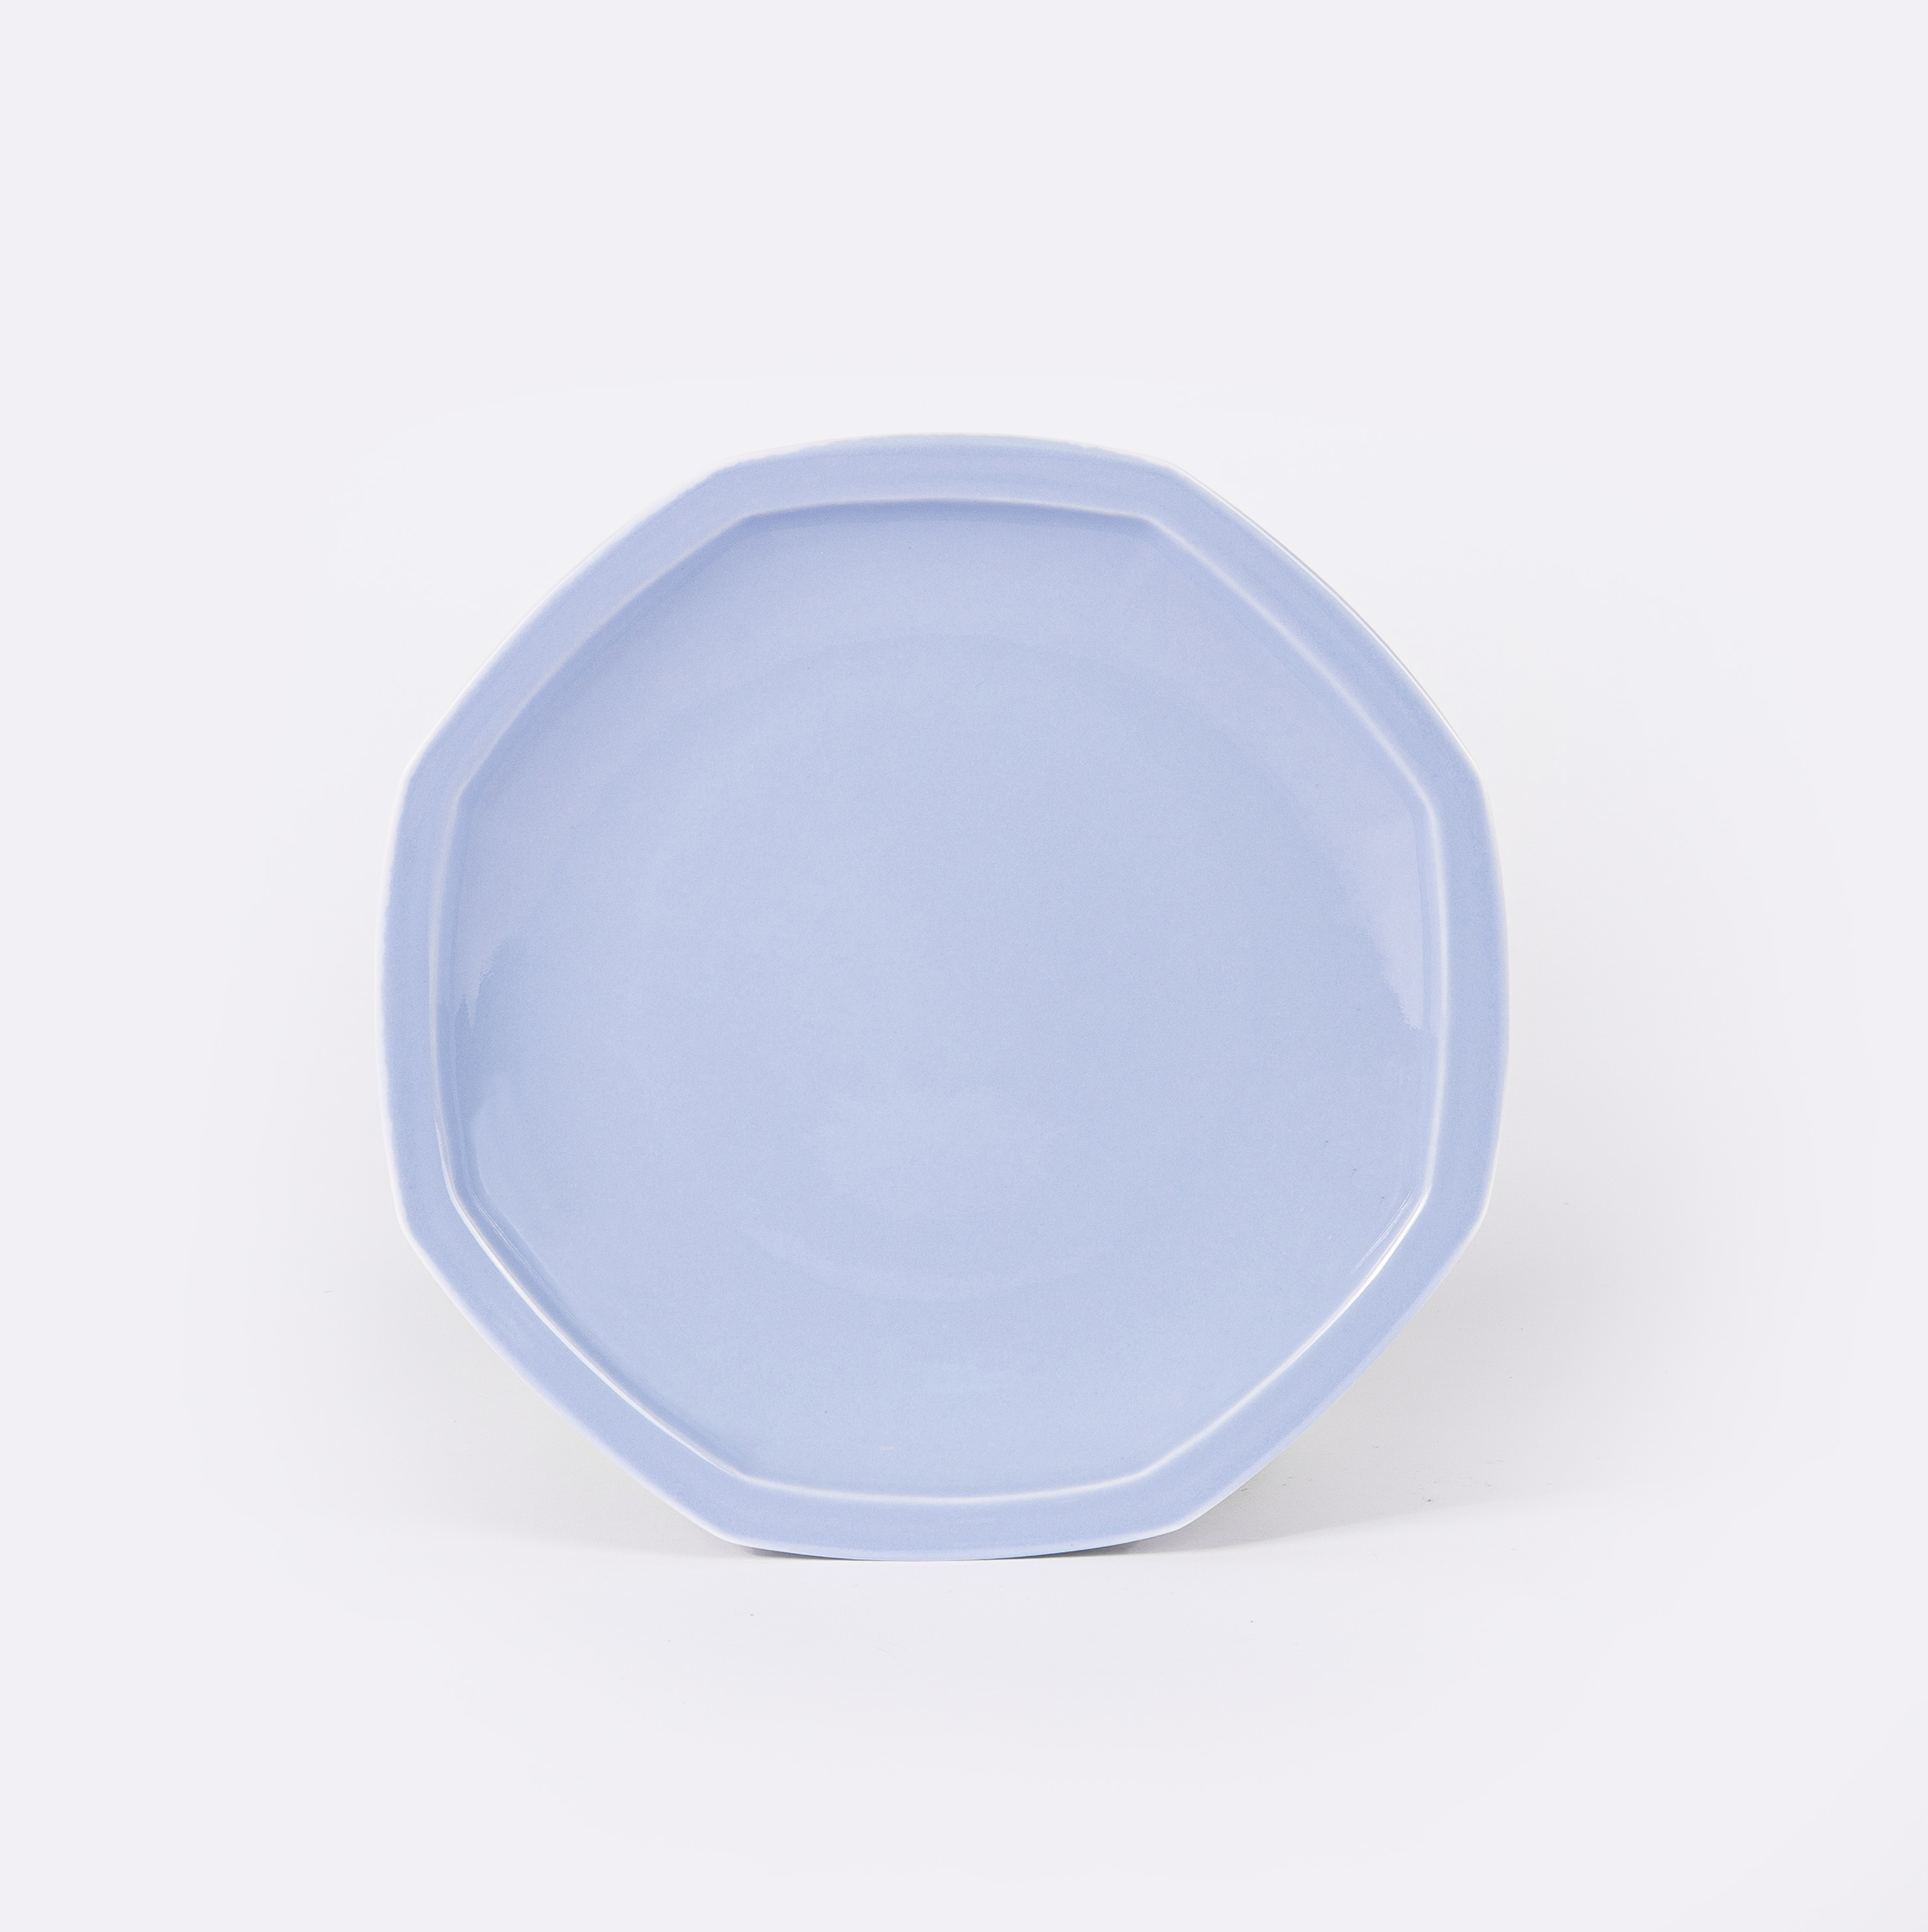 L’assiette octogonale en porcelaine - Bleu pastel - Intemporelle